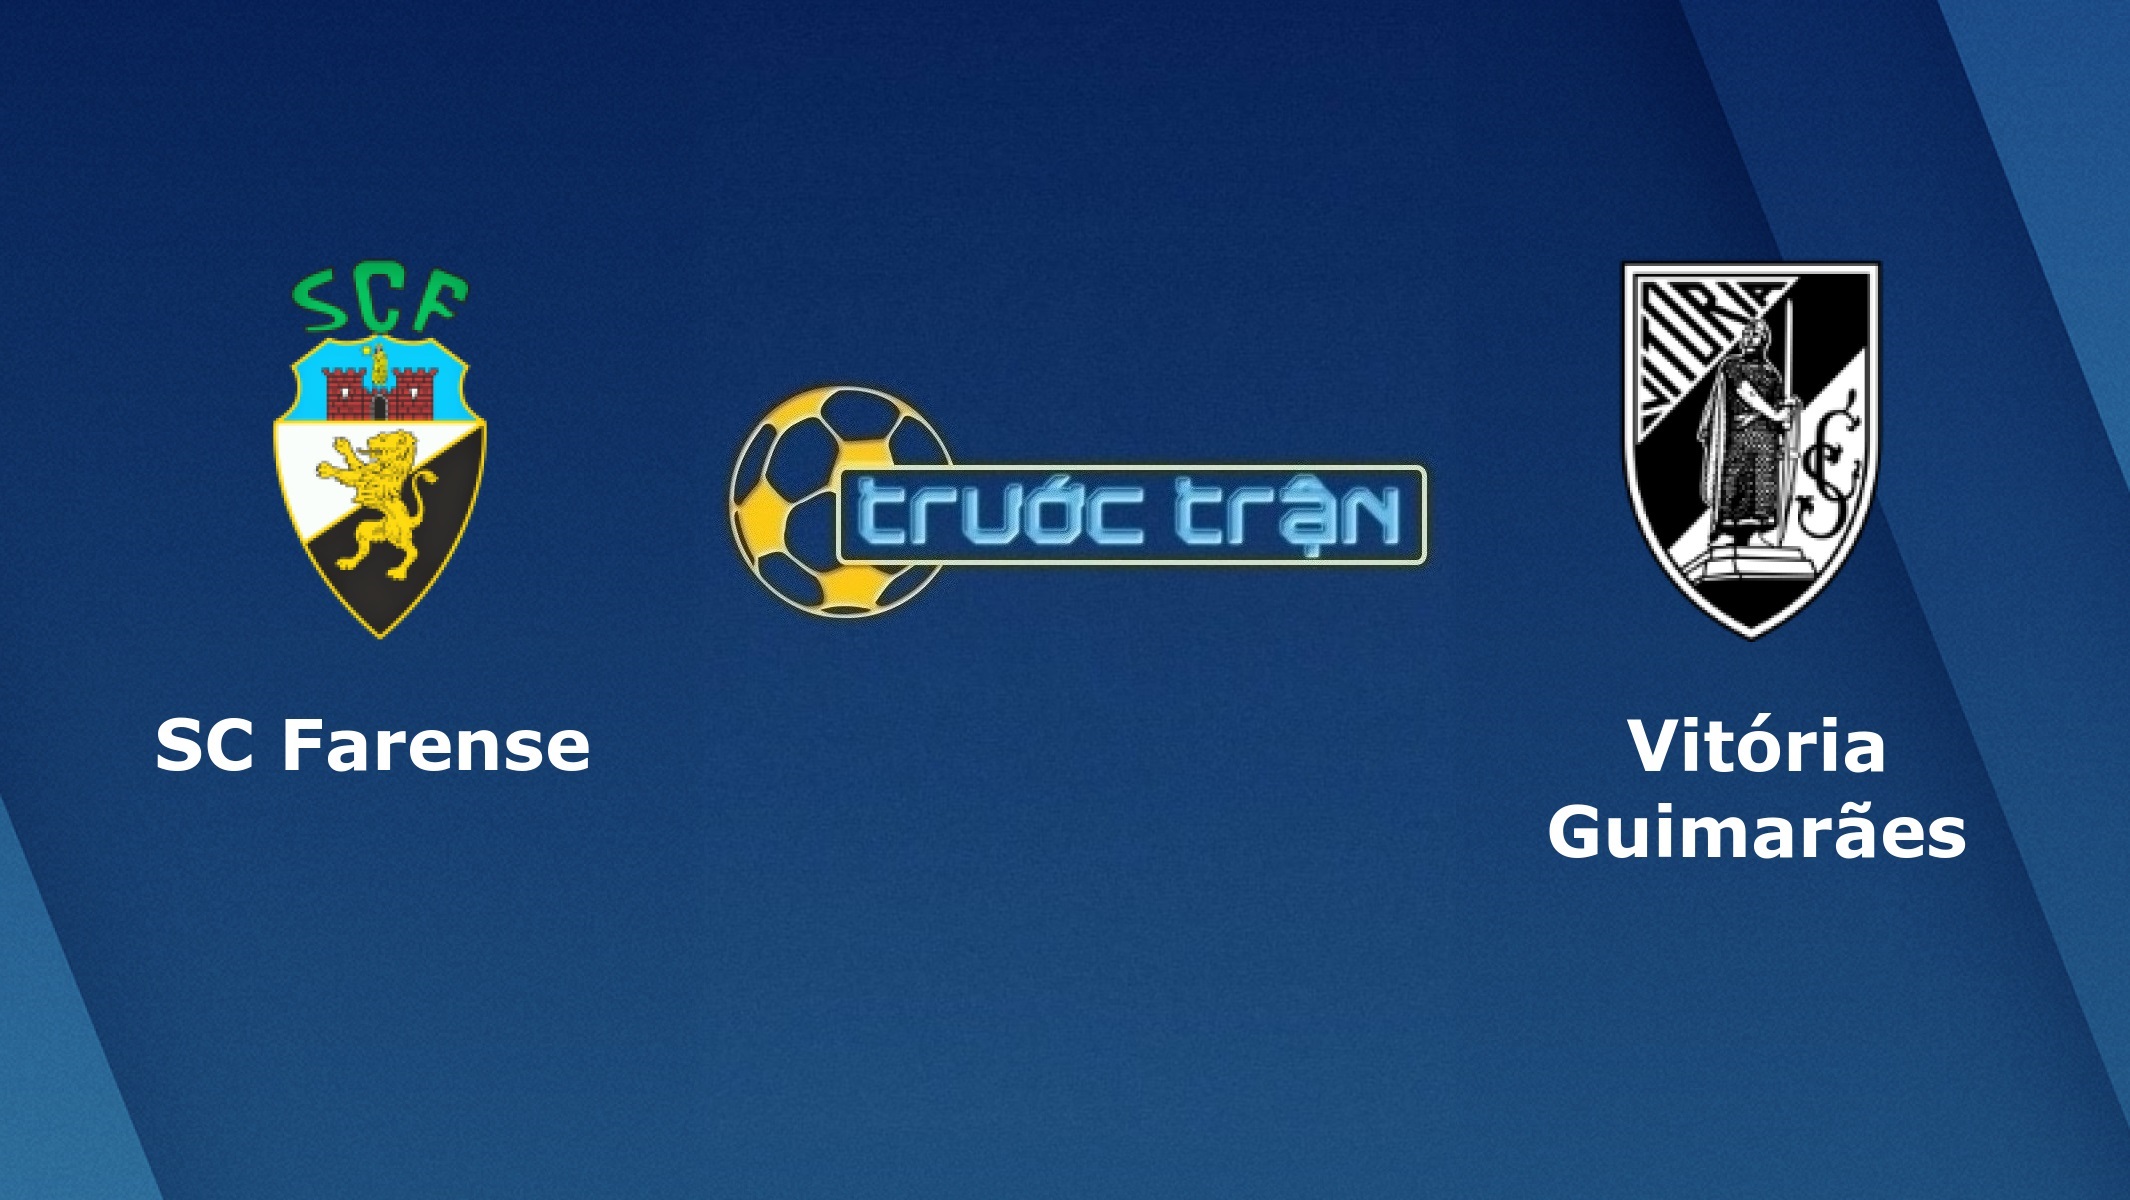 Farense vs Vitoria Guimaraes – Tip kèo bóng đá hôm nay – 02h30 07/05/2021